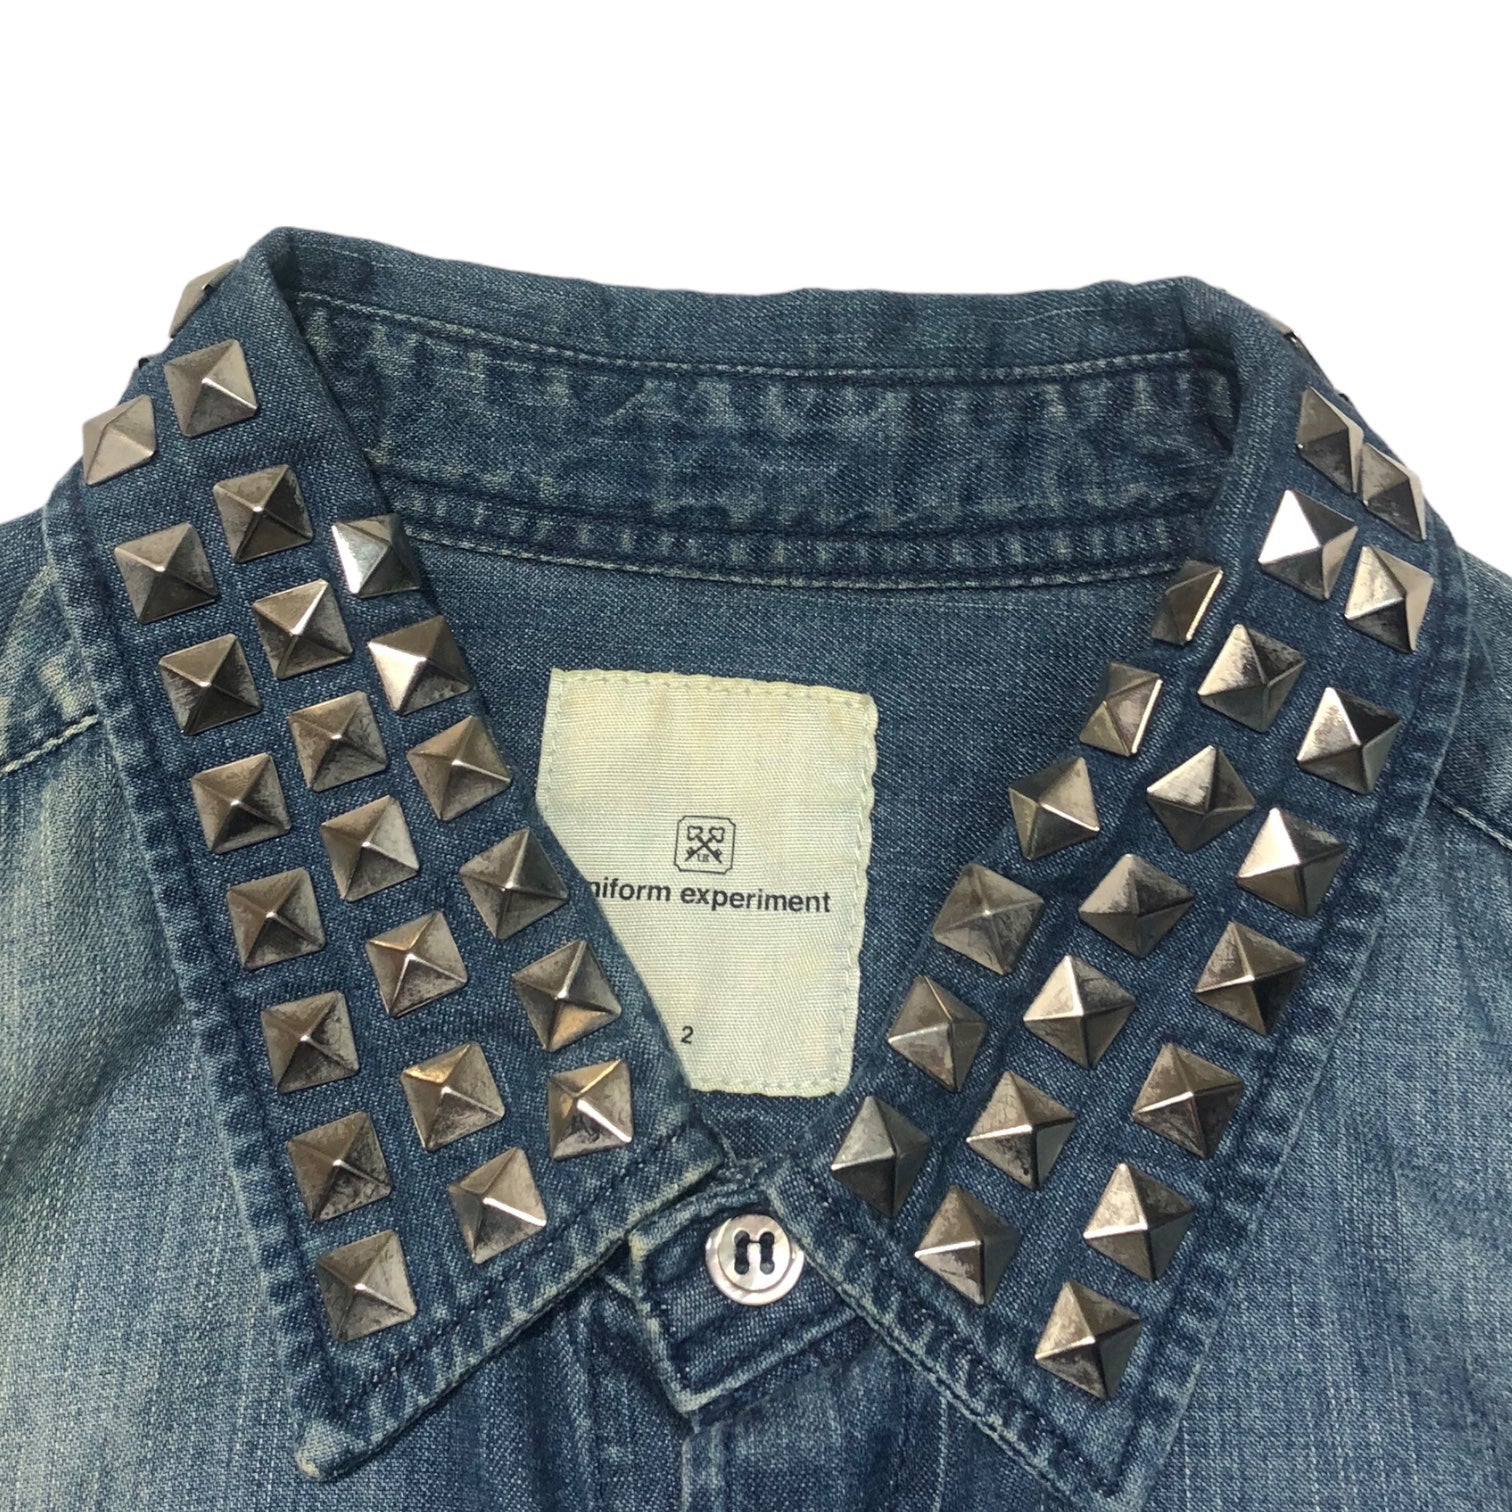 uniform experiment(ユニフォームエクスペリメント) 12SS studded denim shirt スタッズ デニム シャツ UE-123023 2(M) ライトインディゴ